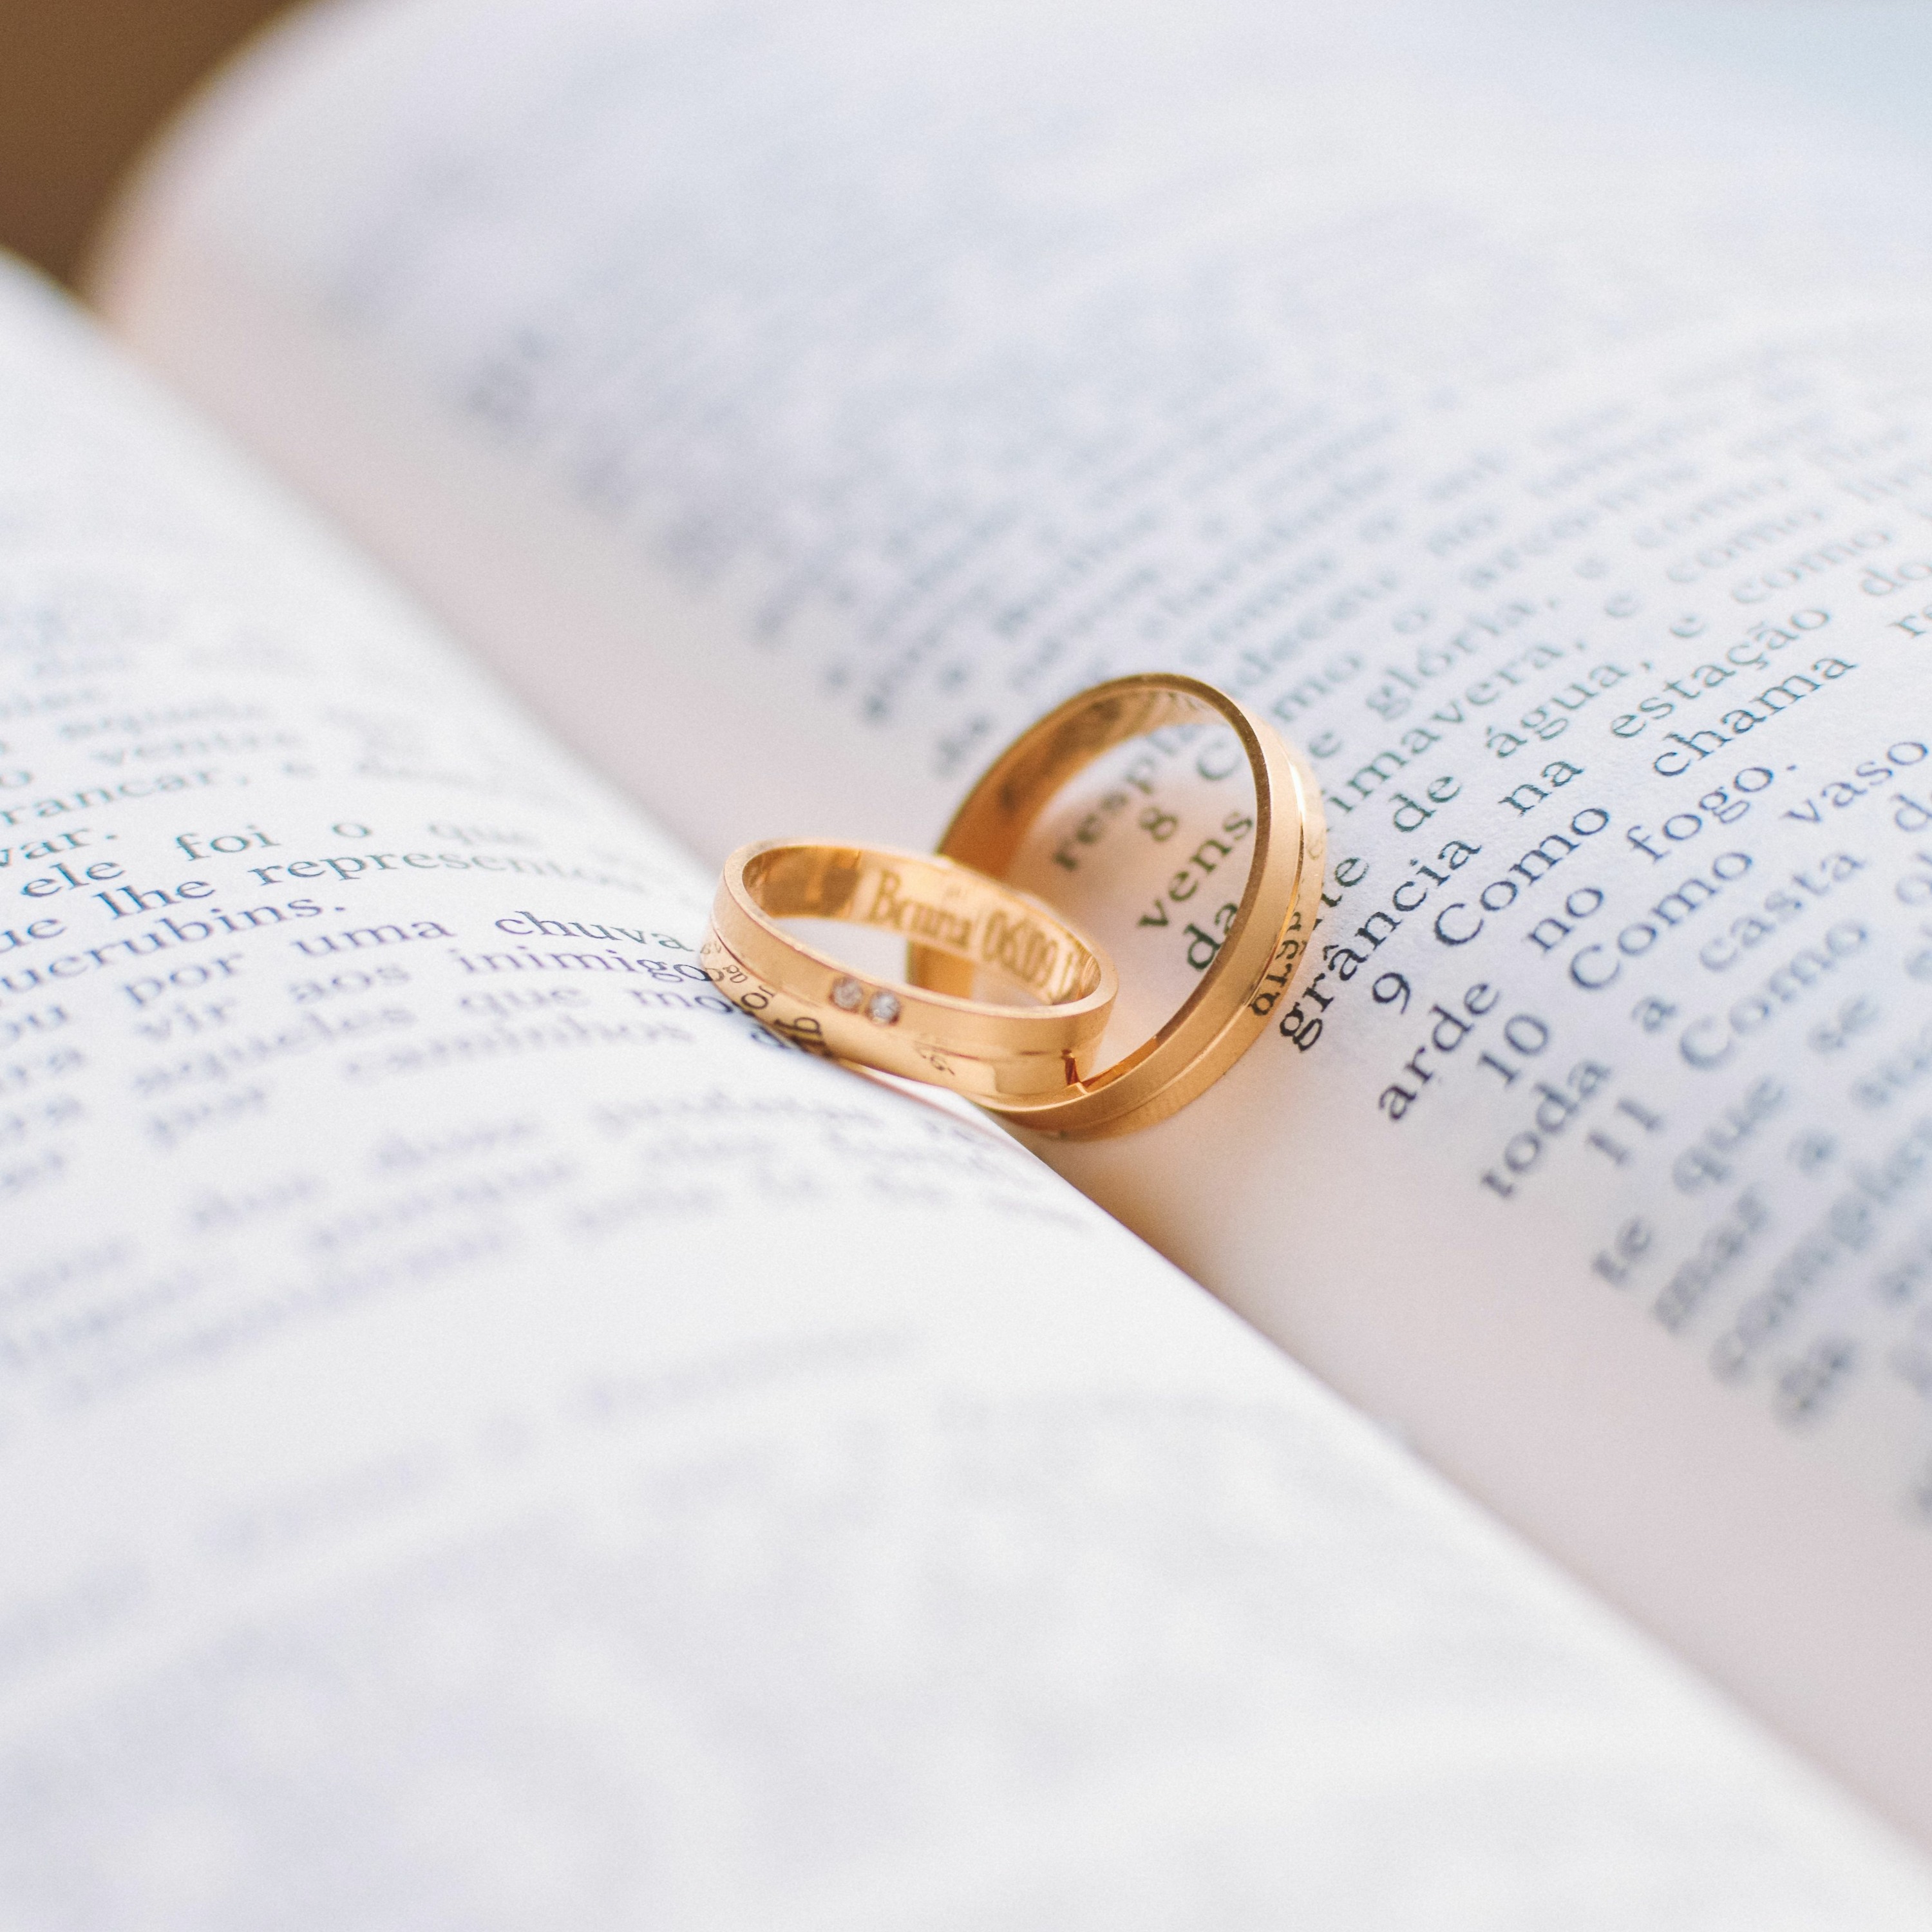 Prečo na manželstve záleží: Stiahnite si bezplatne knihu o 30 výhodách manželstva podľa vedcov